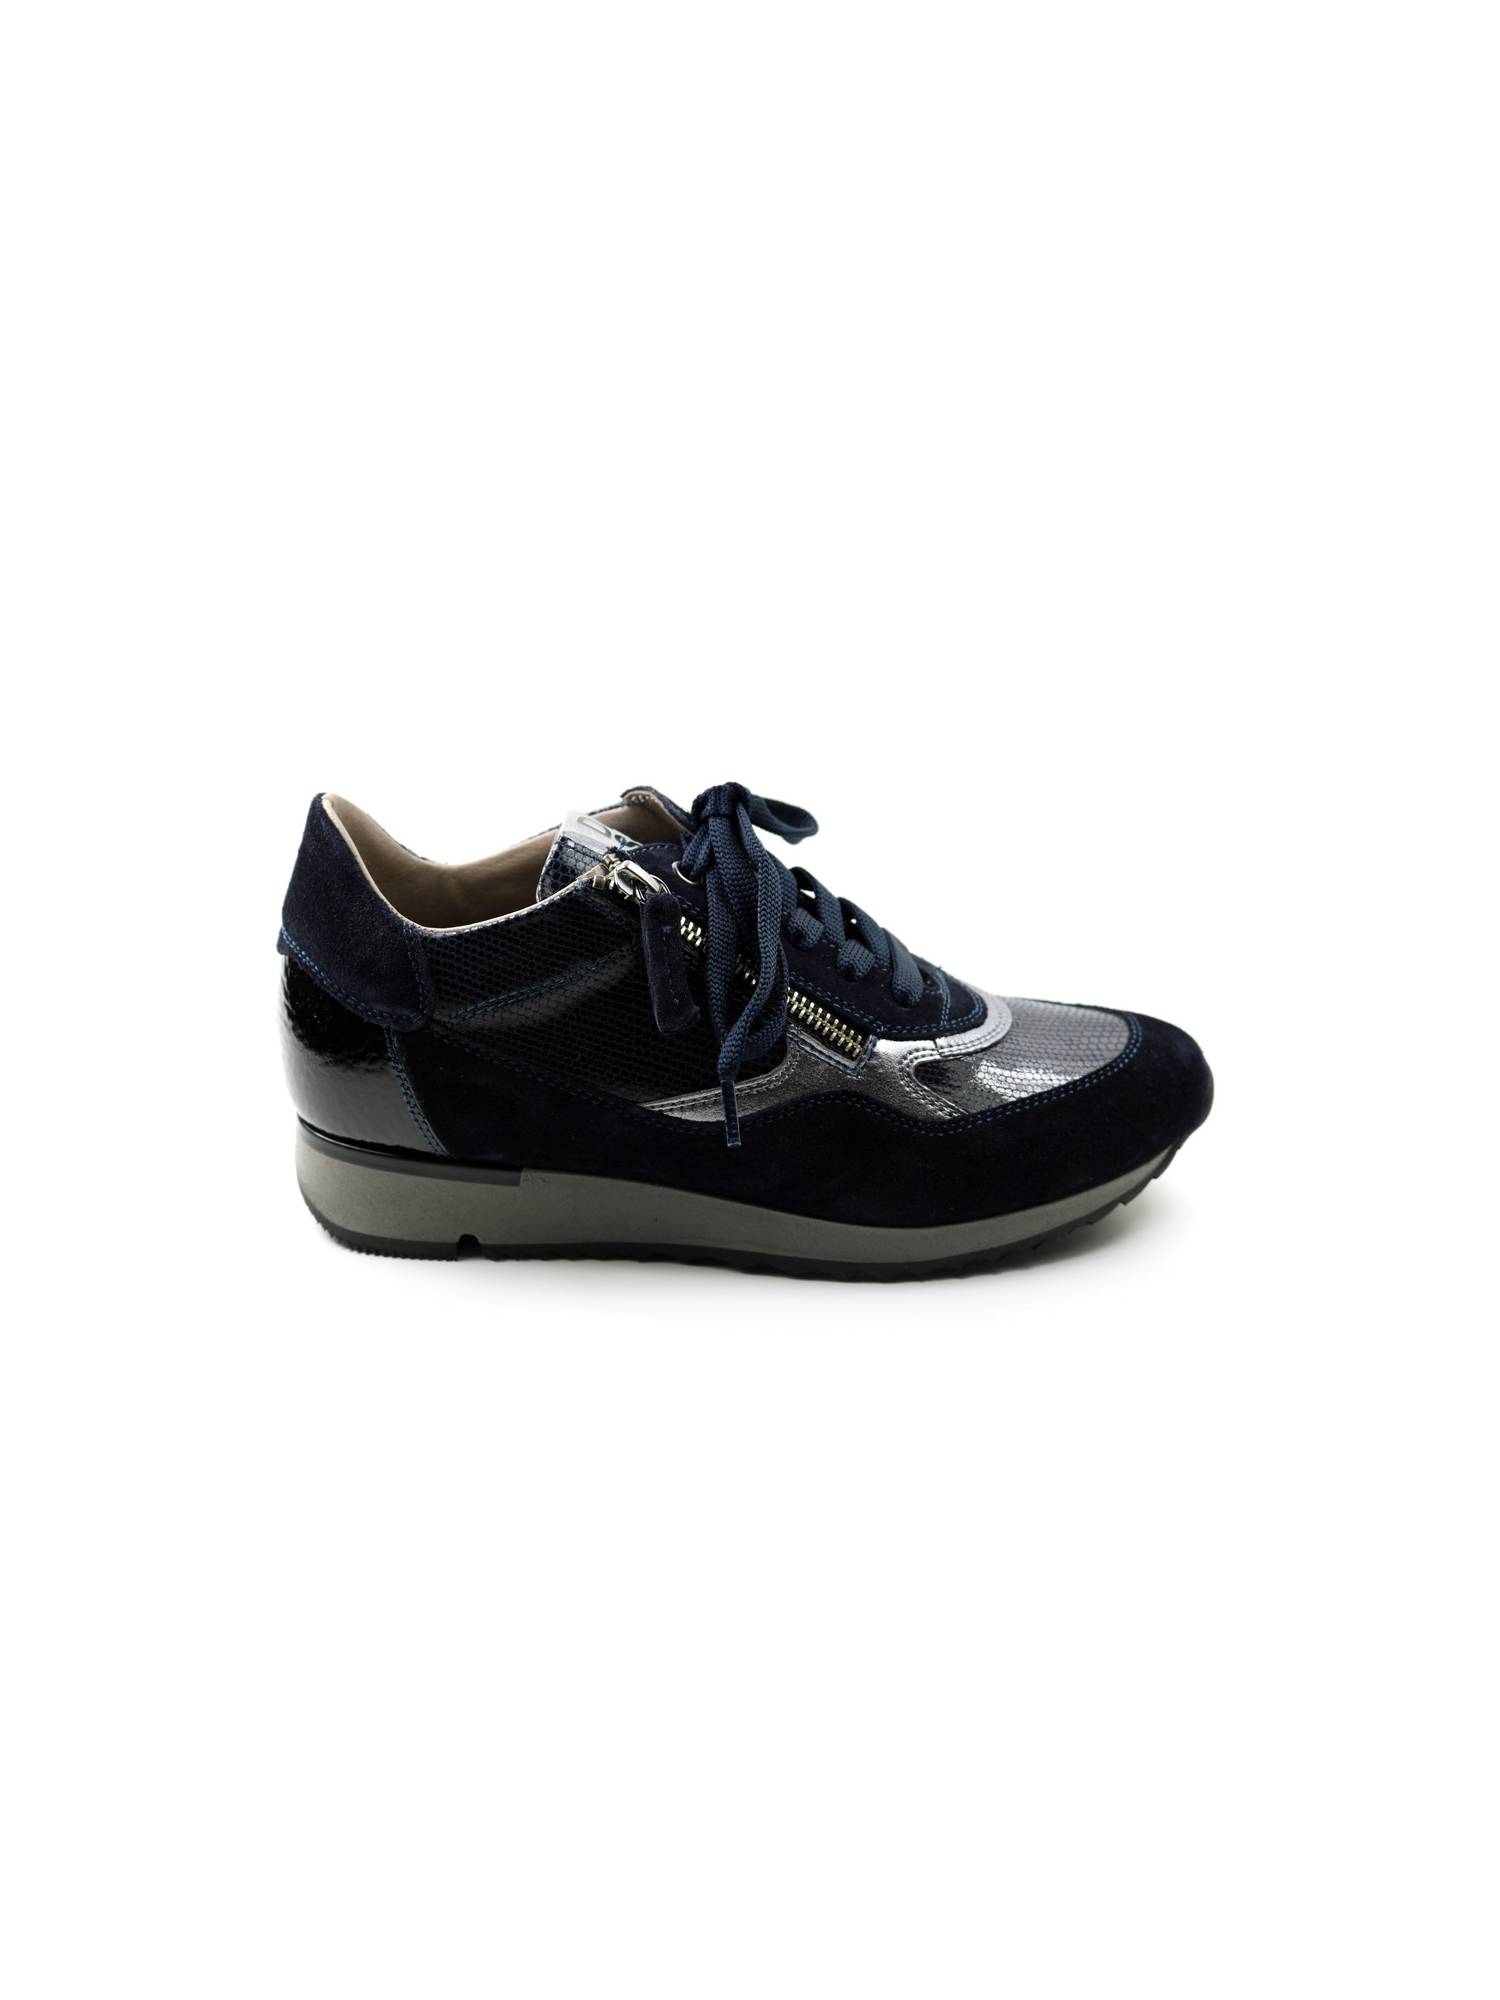 DL SPORT 5820 blauw sneaker - www.lascarpa.nl